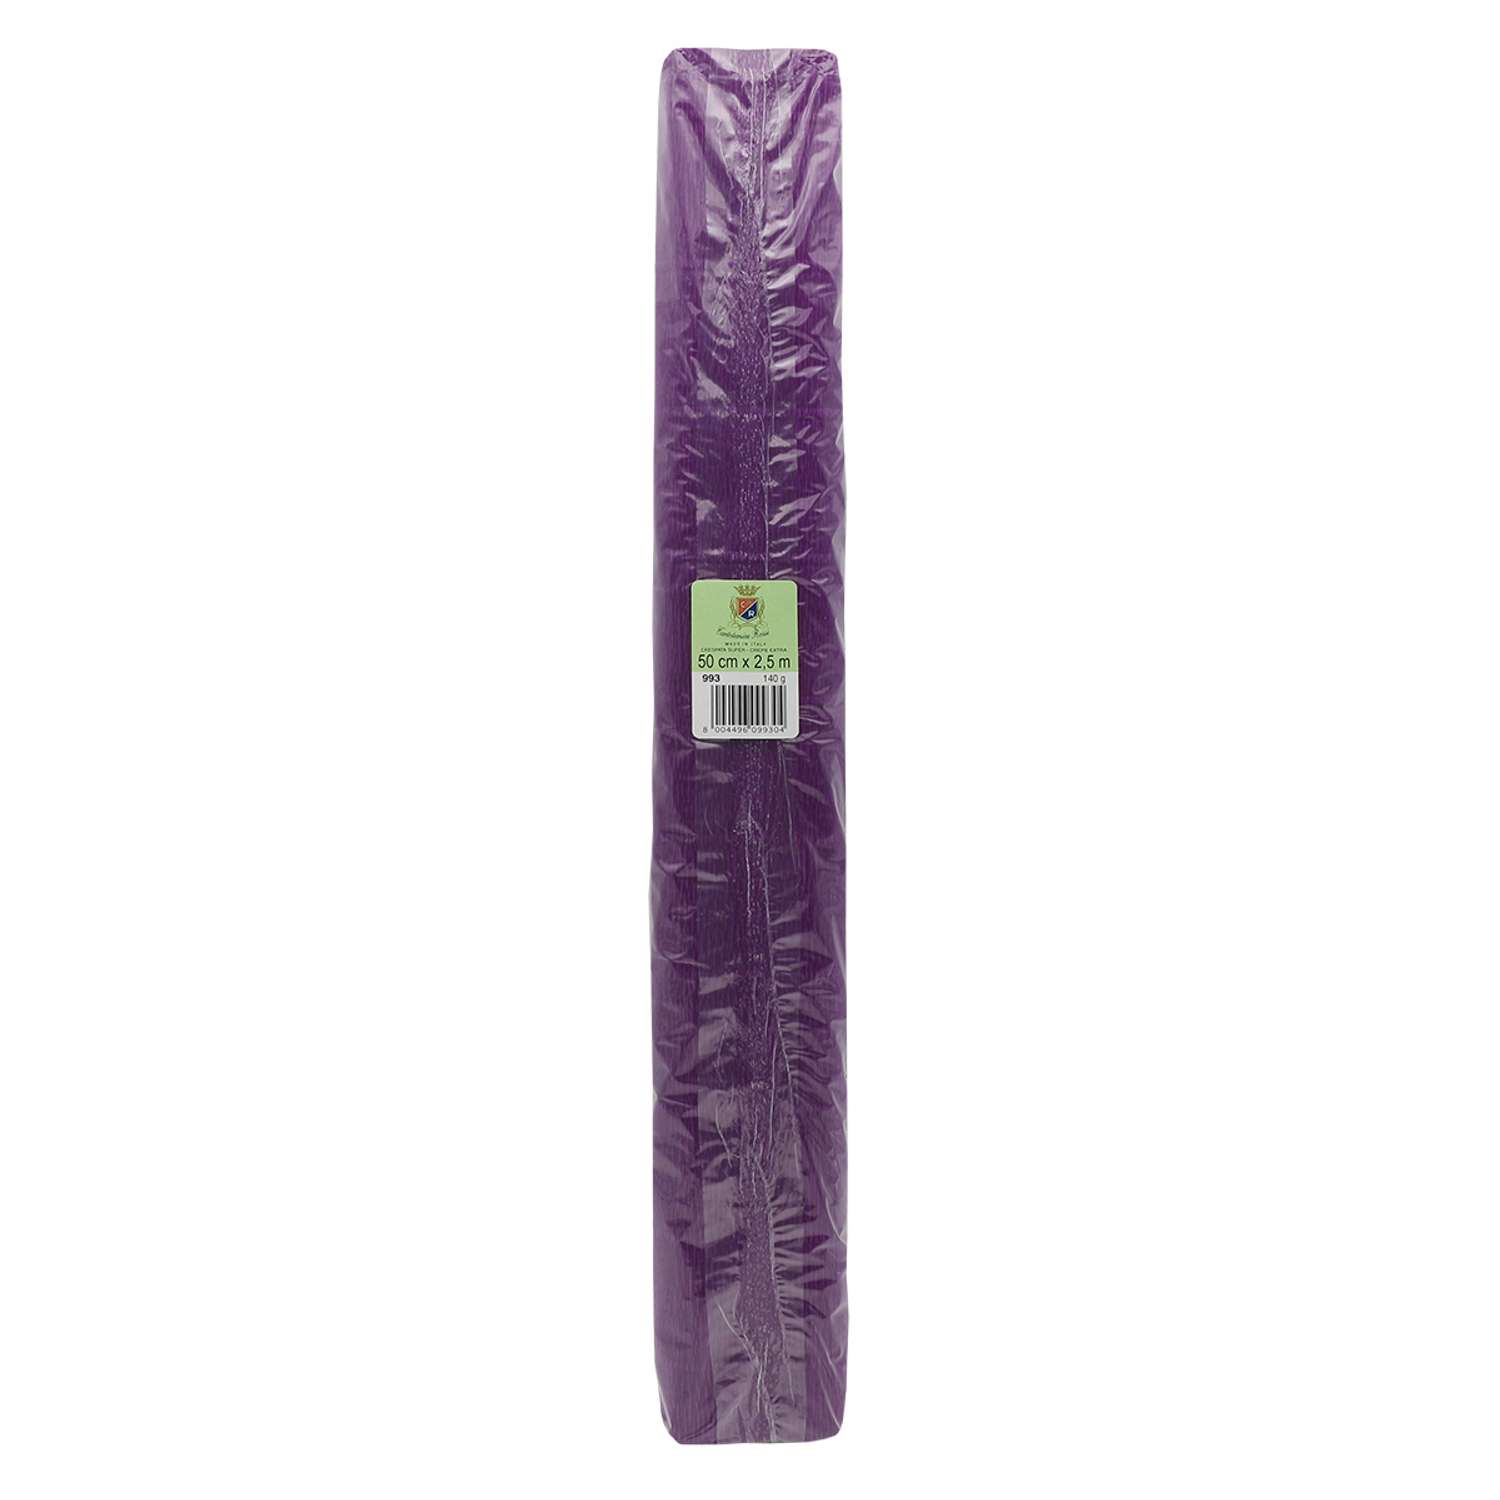 Бумага Айрис гофрированная креповая для творчества 50 см х 2.5 м 140 г фиолетовая - фото 4